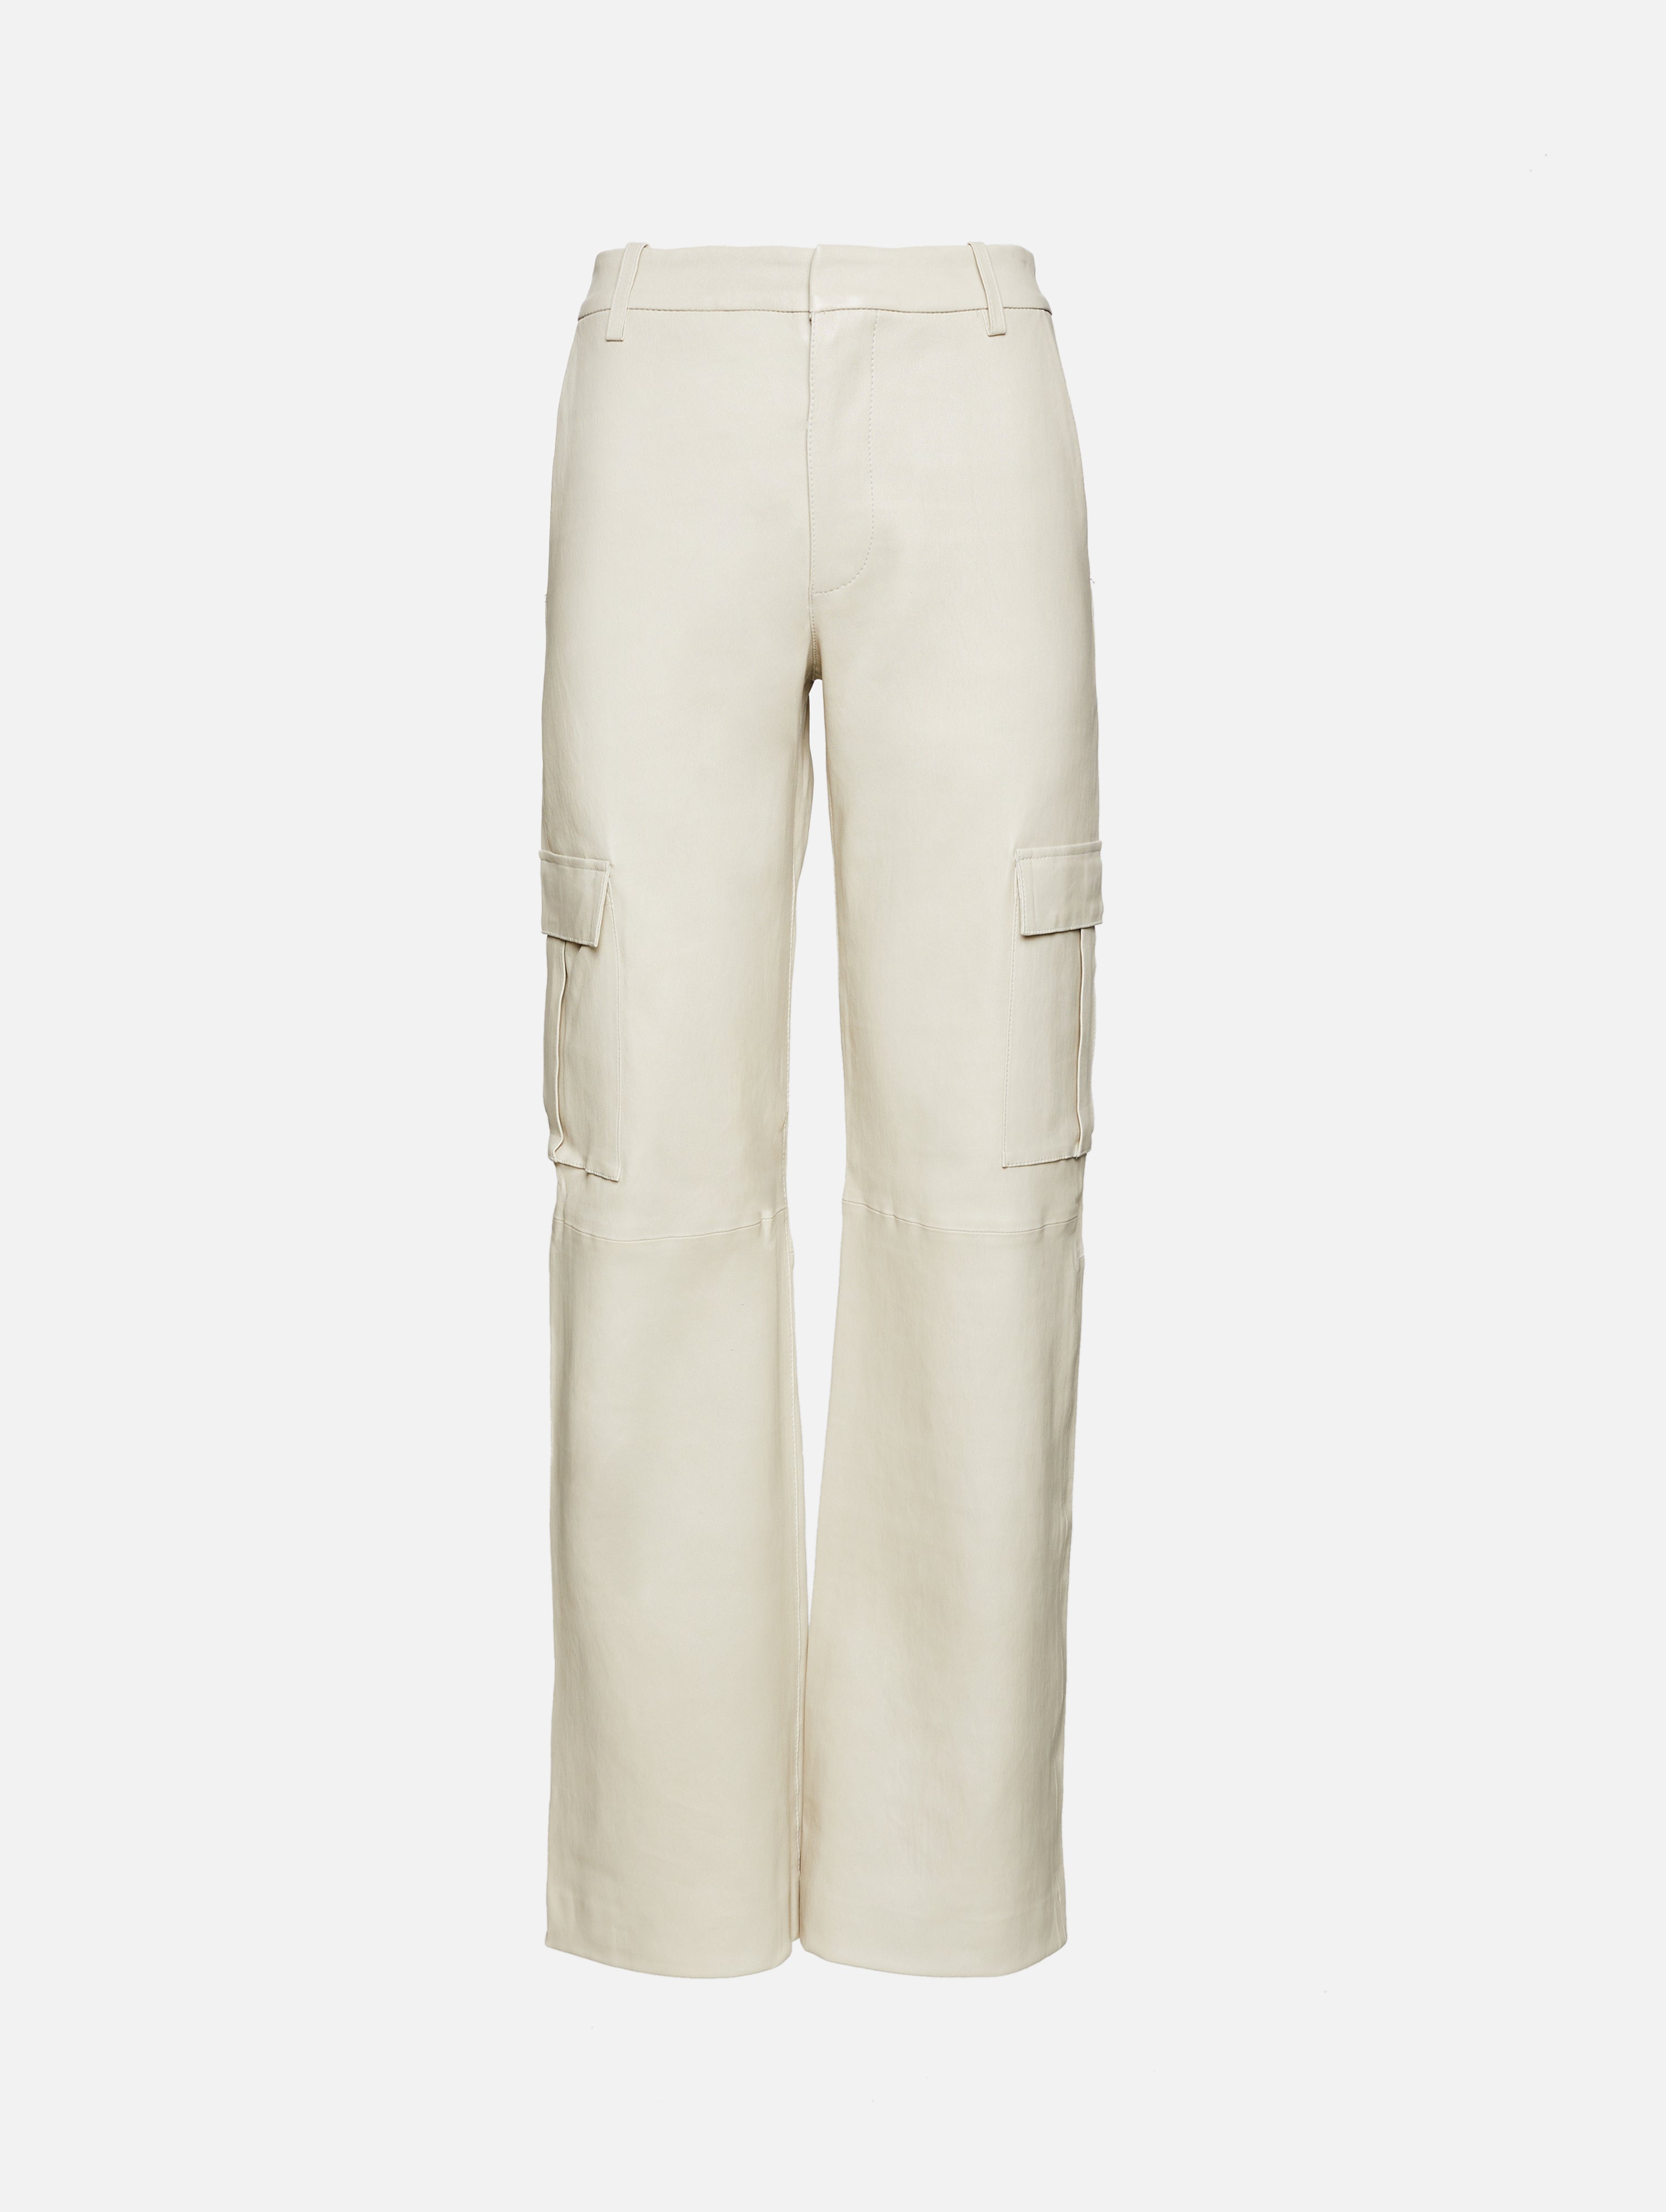 edc by Esprit NEW - Cargo trousers - light khaki/khaki - Zalando.ie